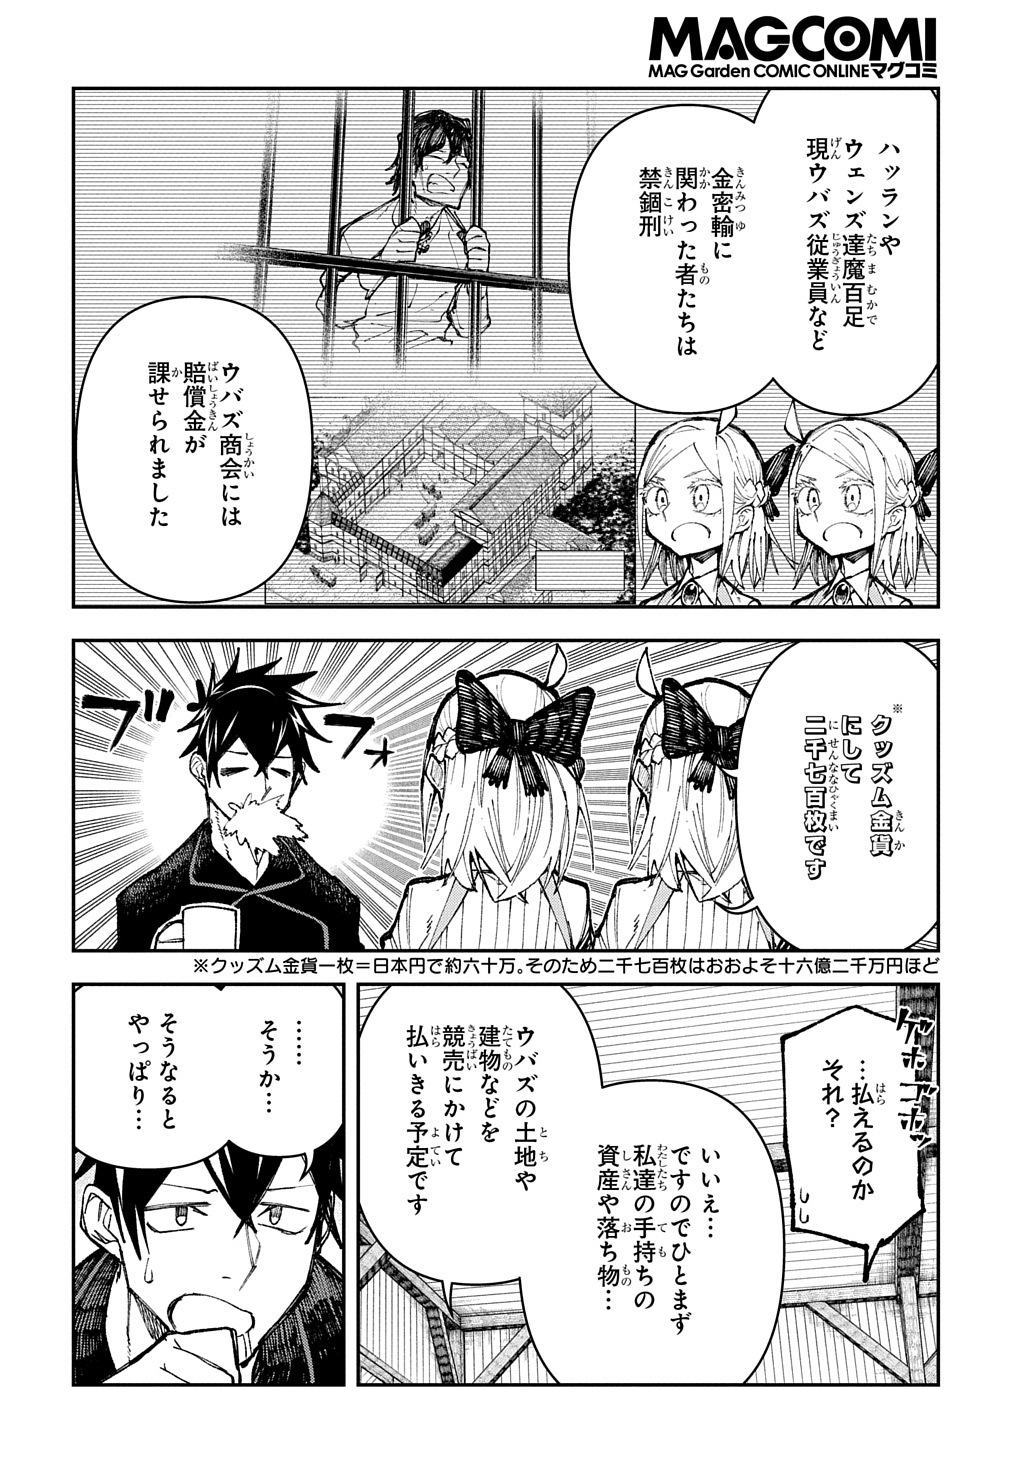 Juunenme, Kikan wo Akirameta Tenisha wa Imasara Shujinkou ni naru - Chapter 4 - Page 2